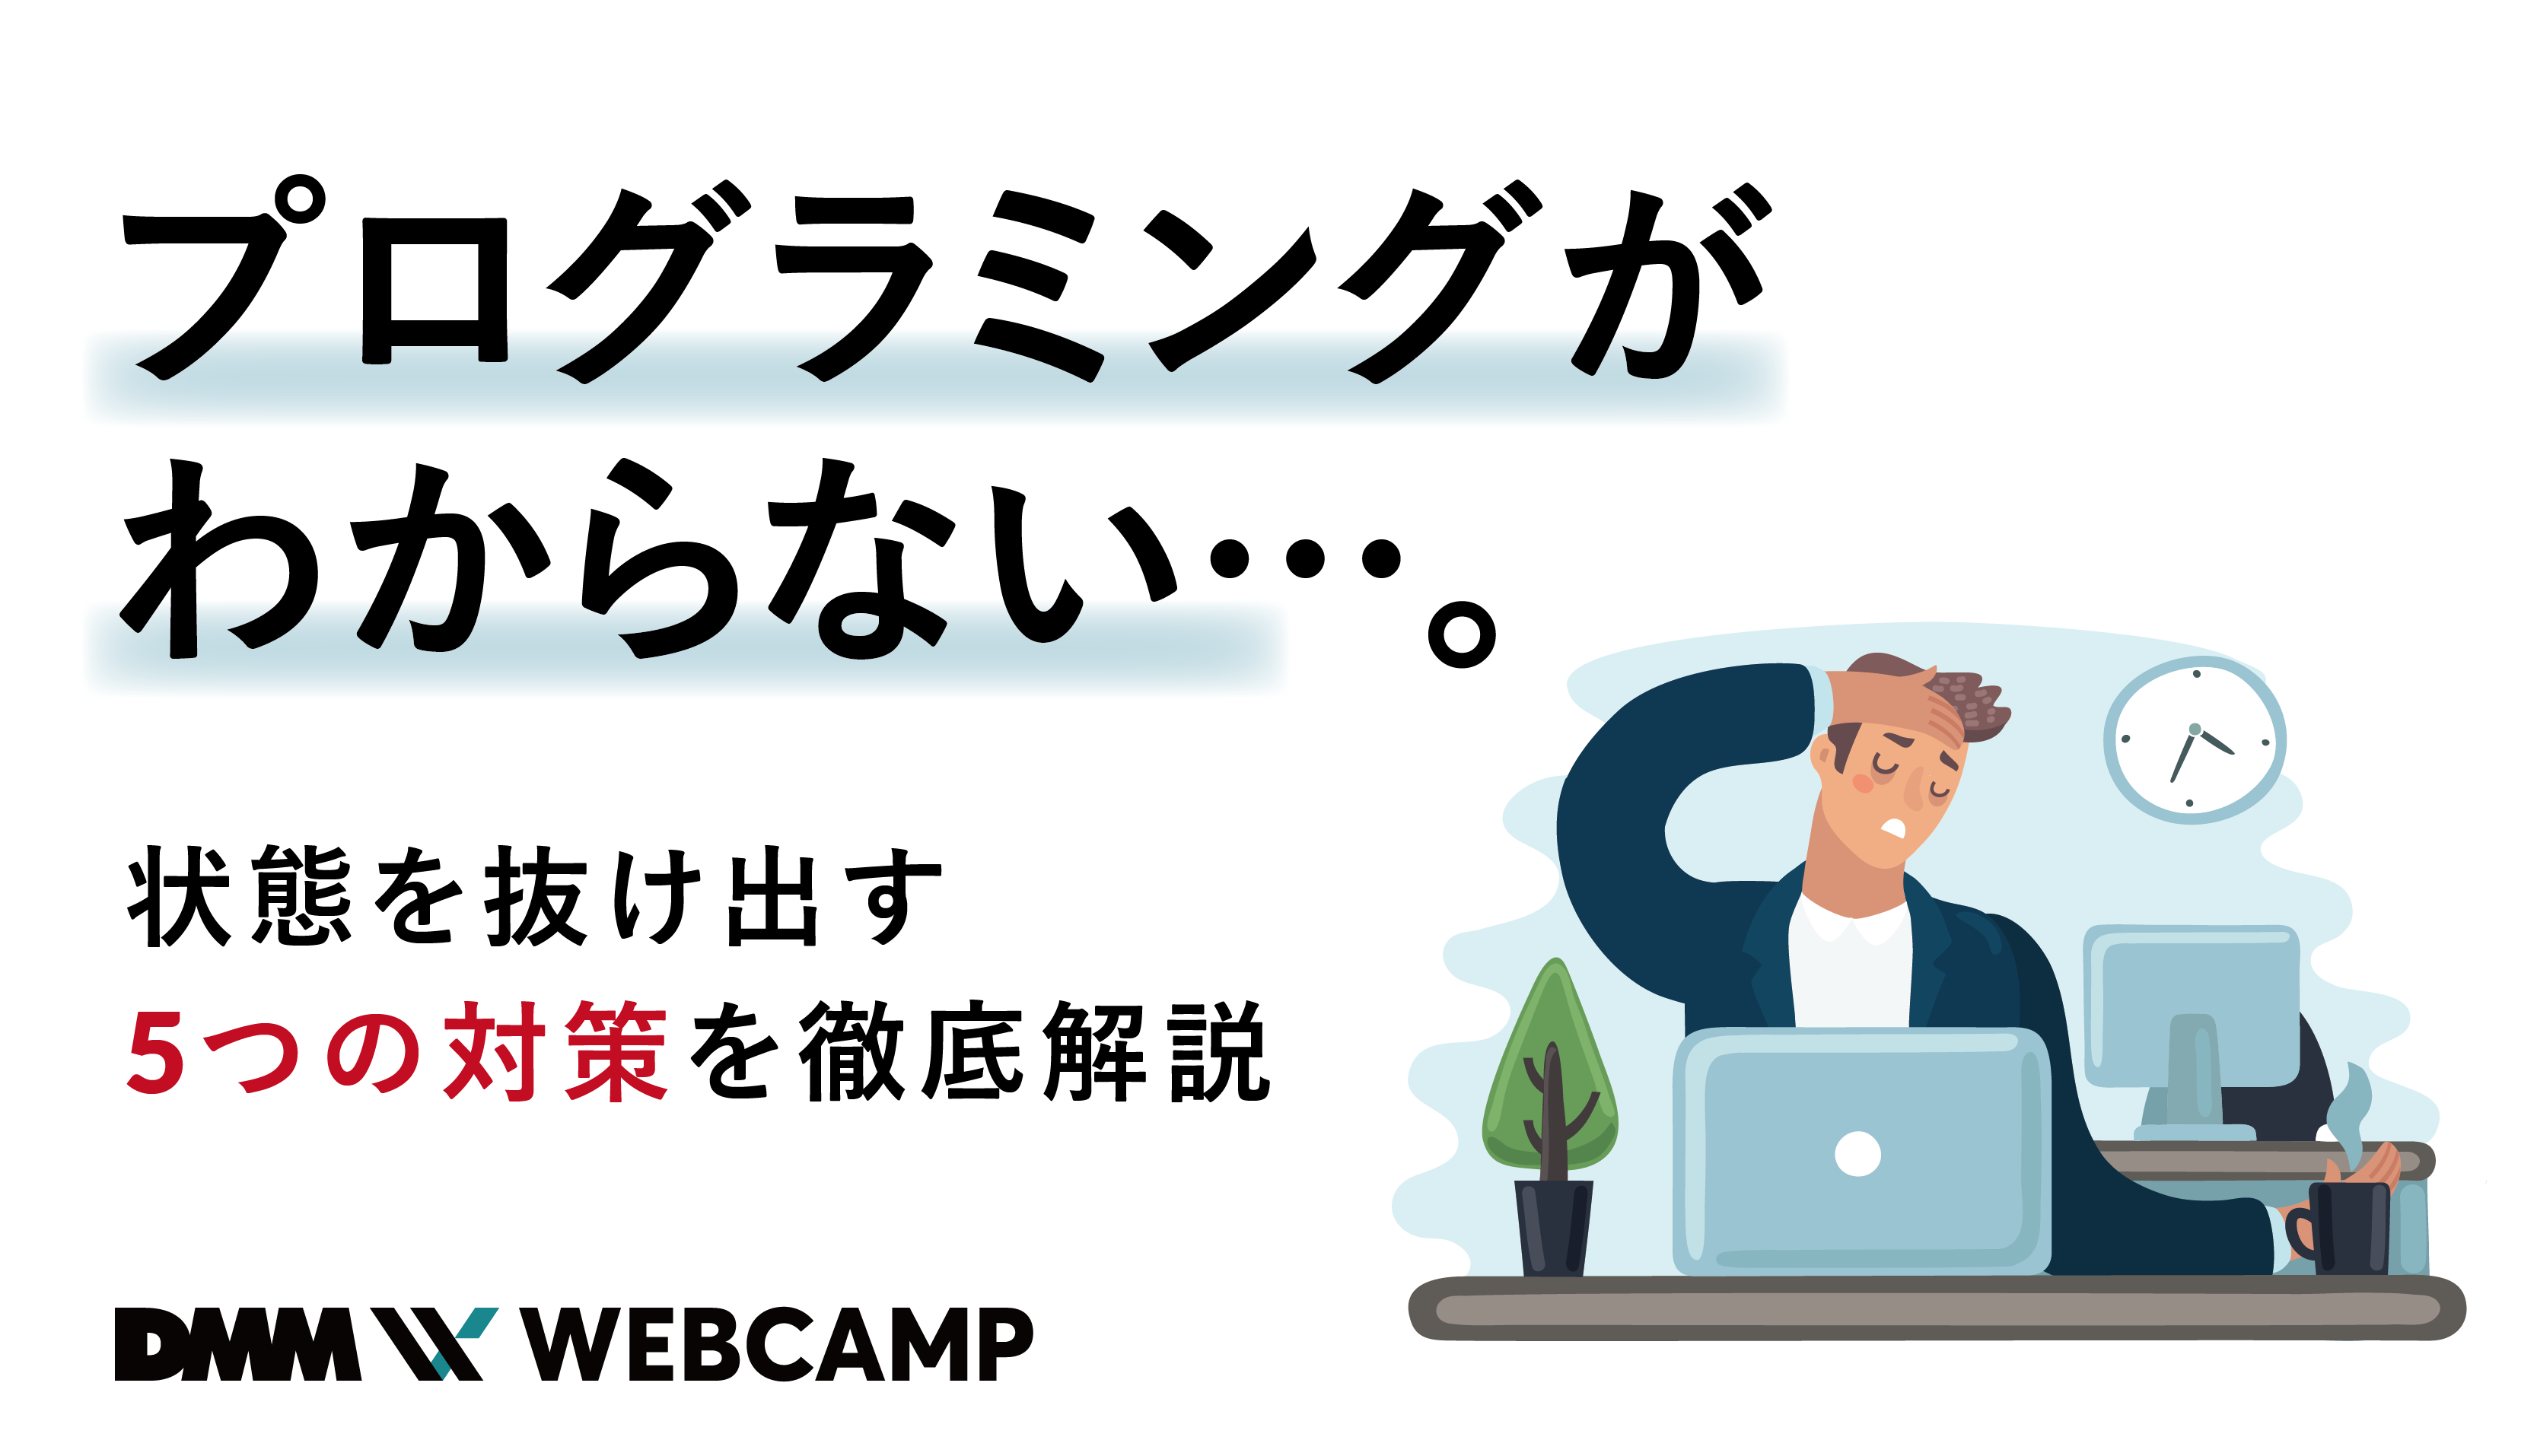 プログラミングがわからない 状態を抜け出す5つの対策を徹底解説 Webcamp Media